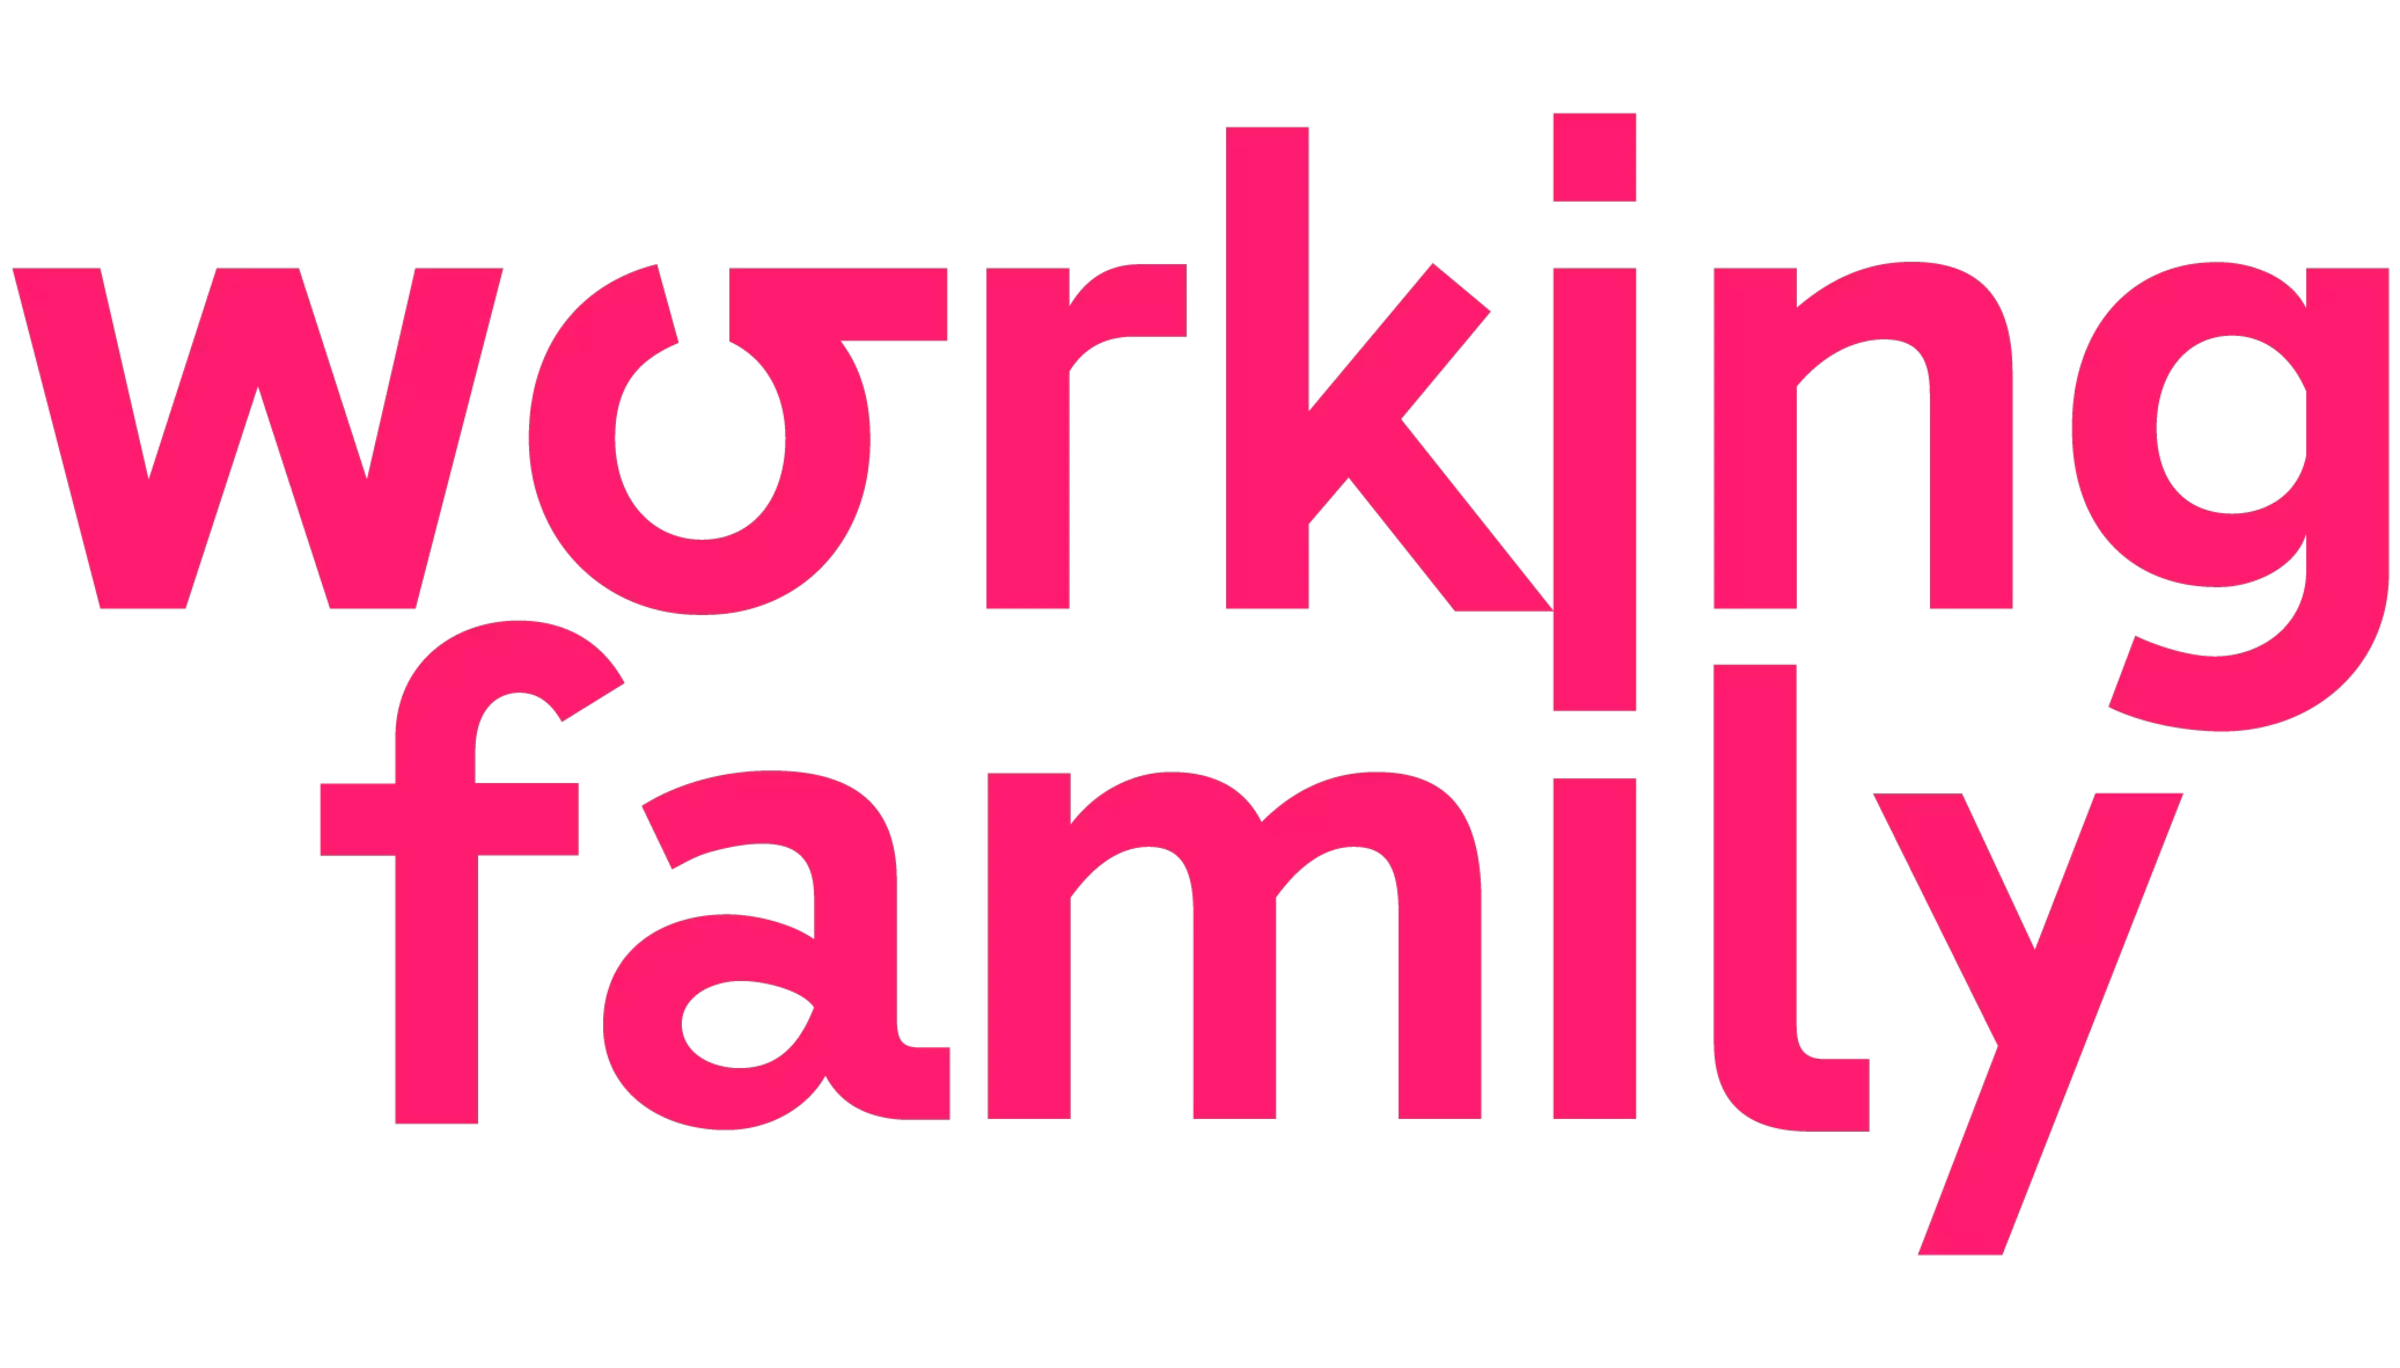 Jordan's Untermühle - Grafik Working Family